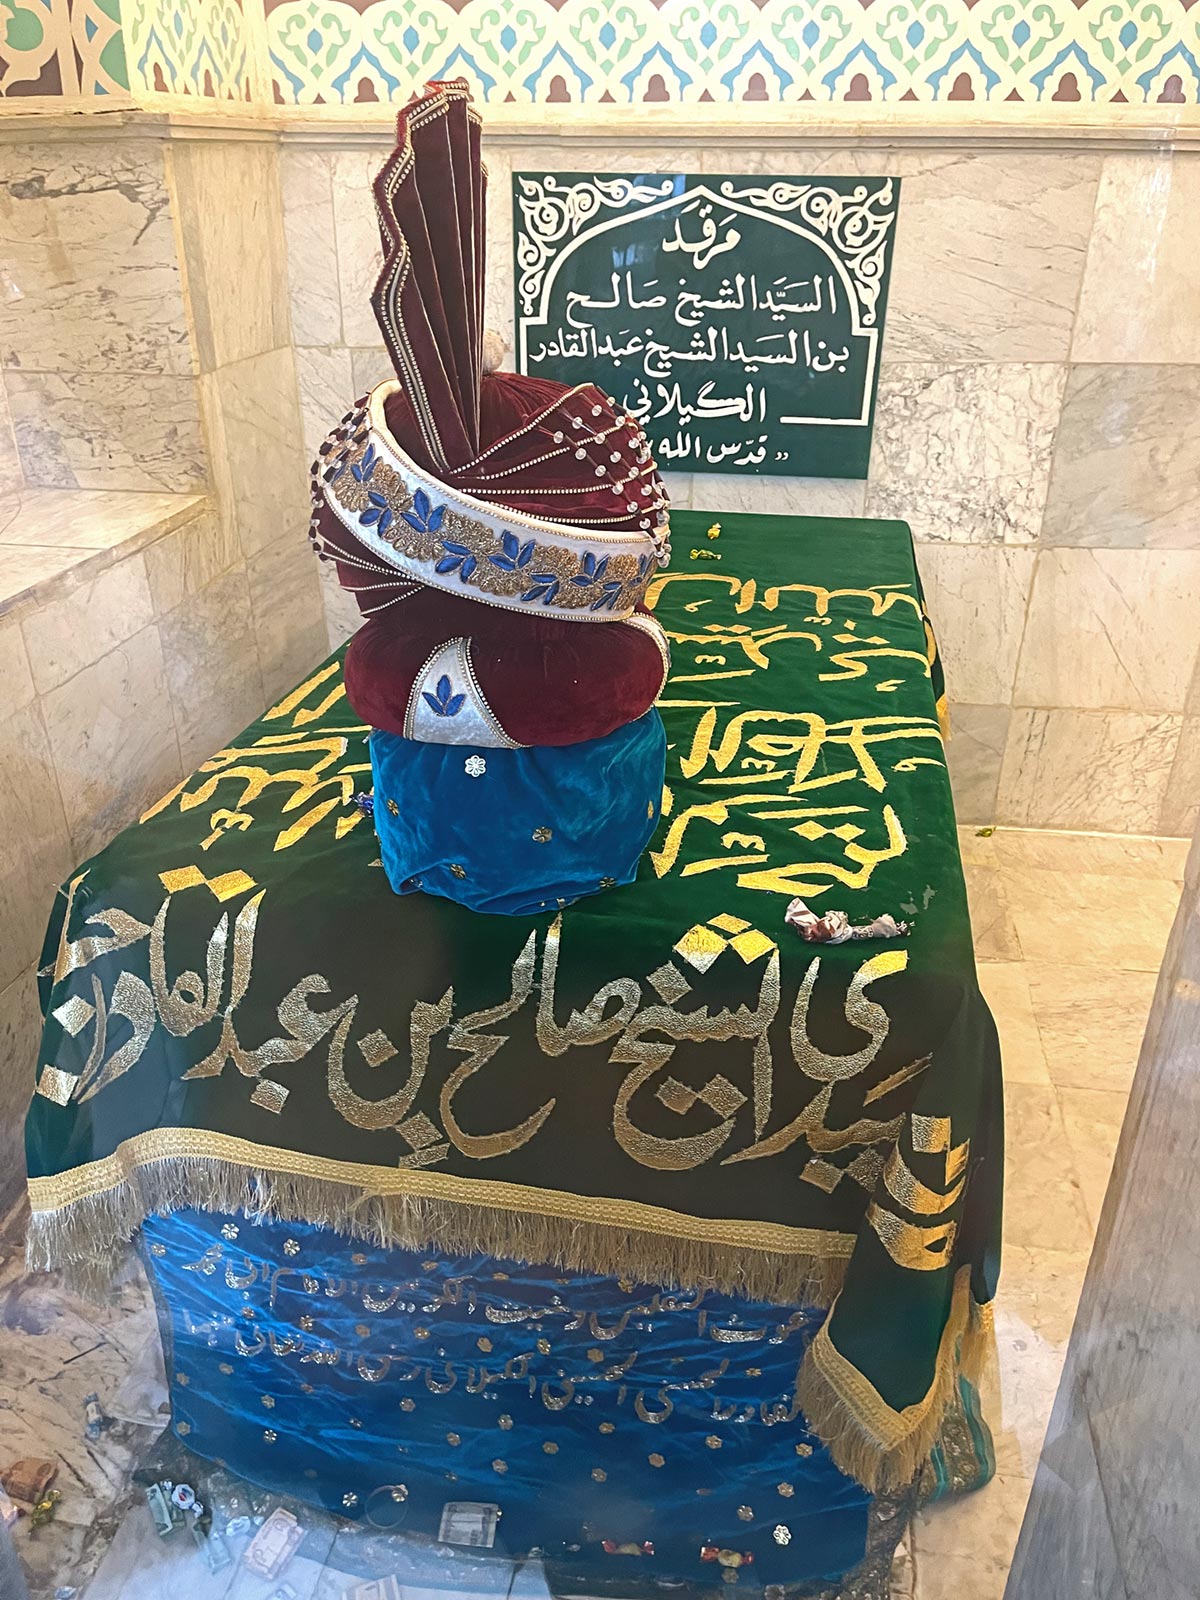 Grab von Scheich Salih, dem Sohn von Abdul Qadir Gilani, im Mausoleum von Abdul Qadir Gilani, Bagdad